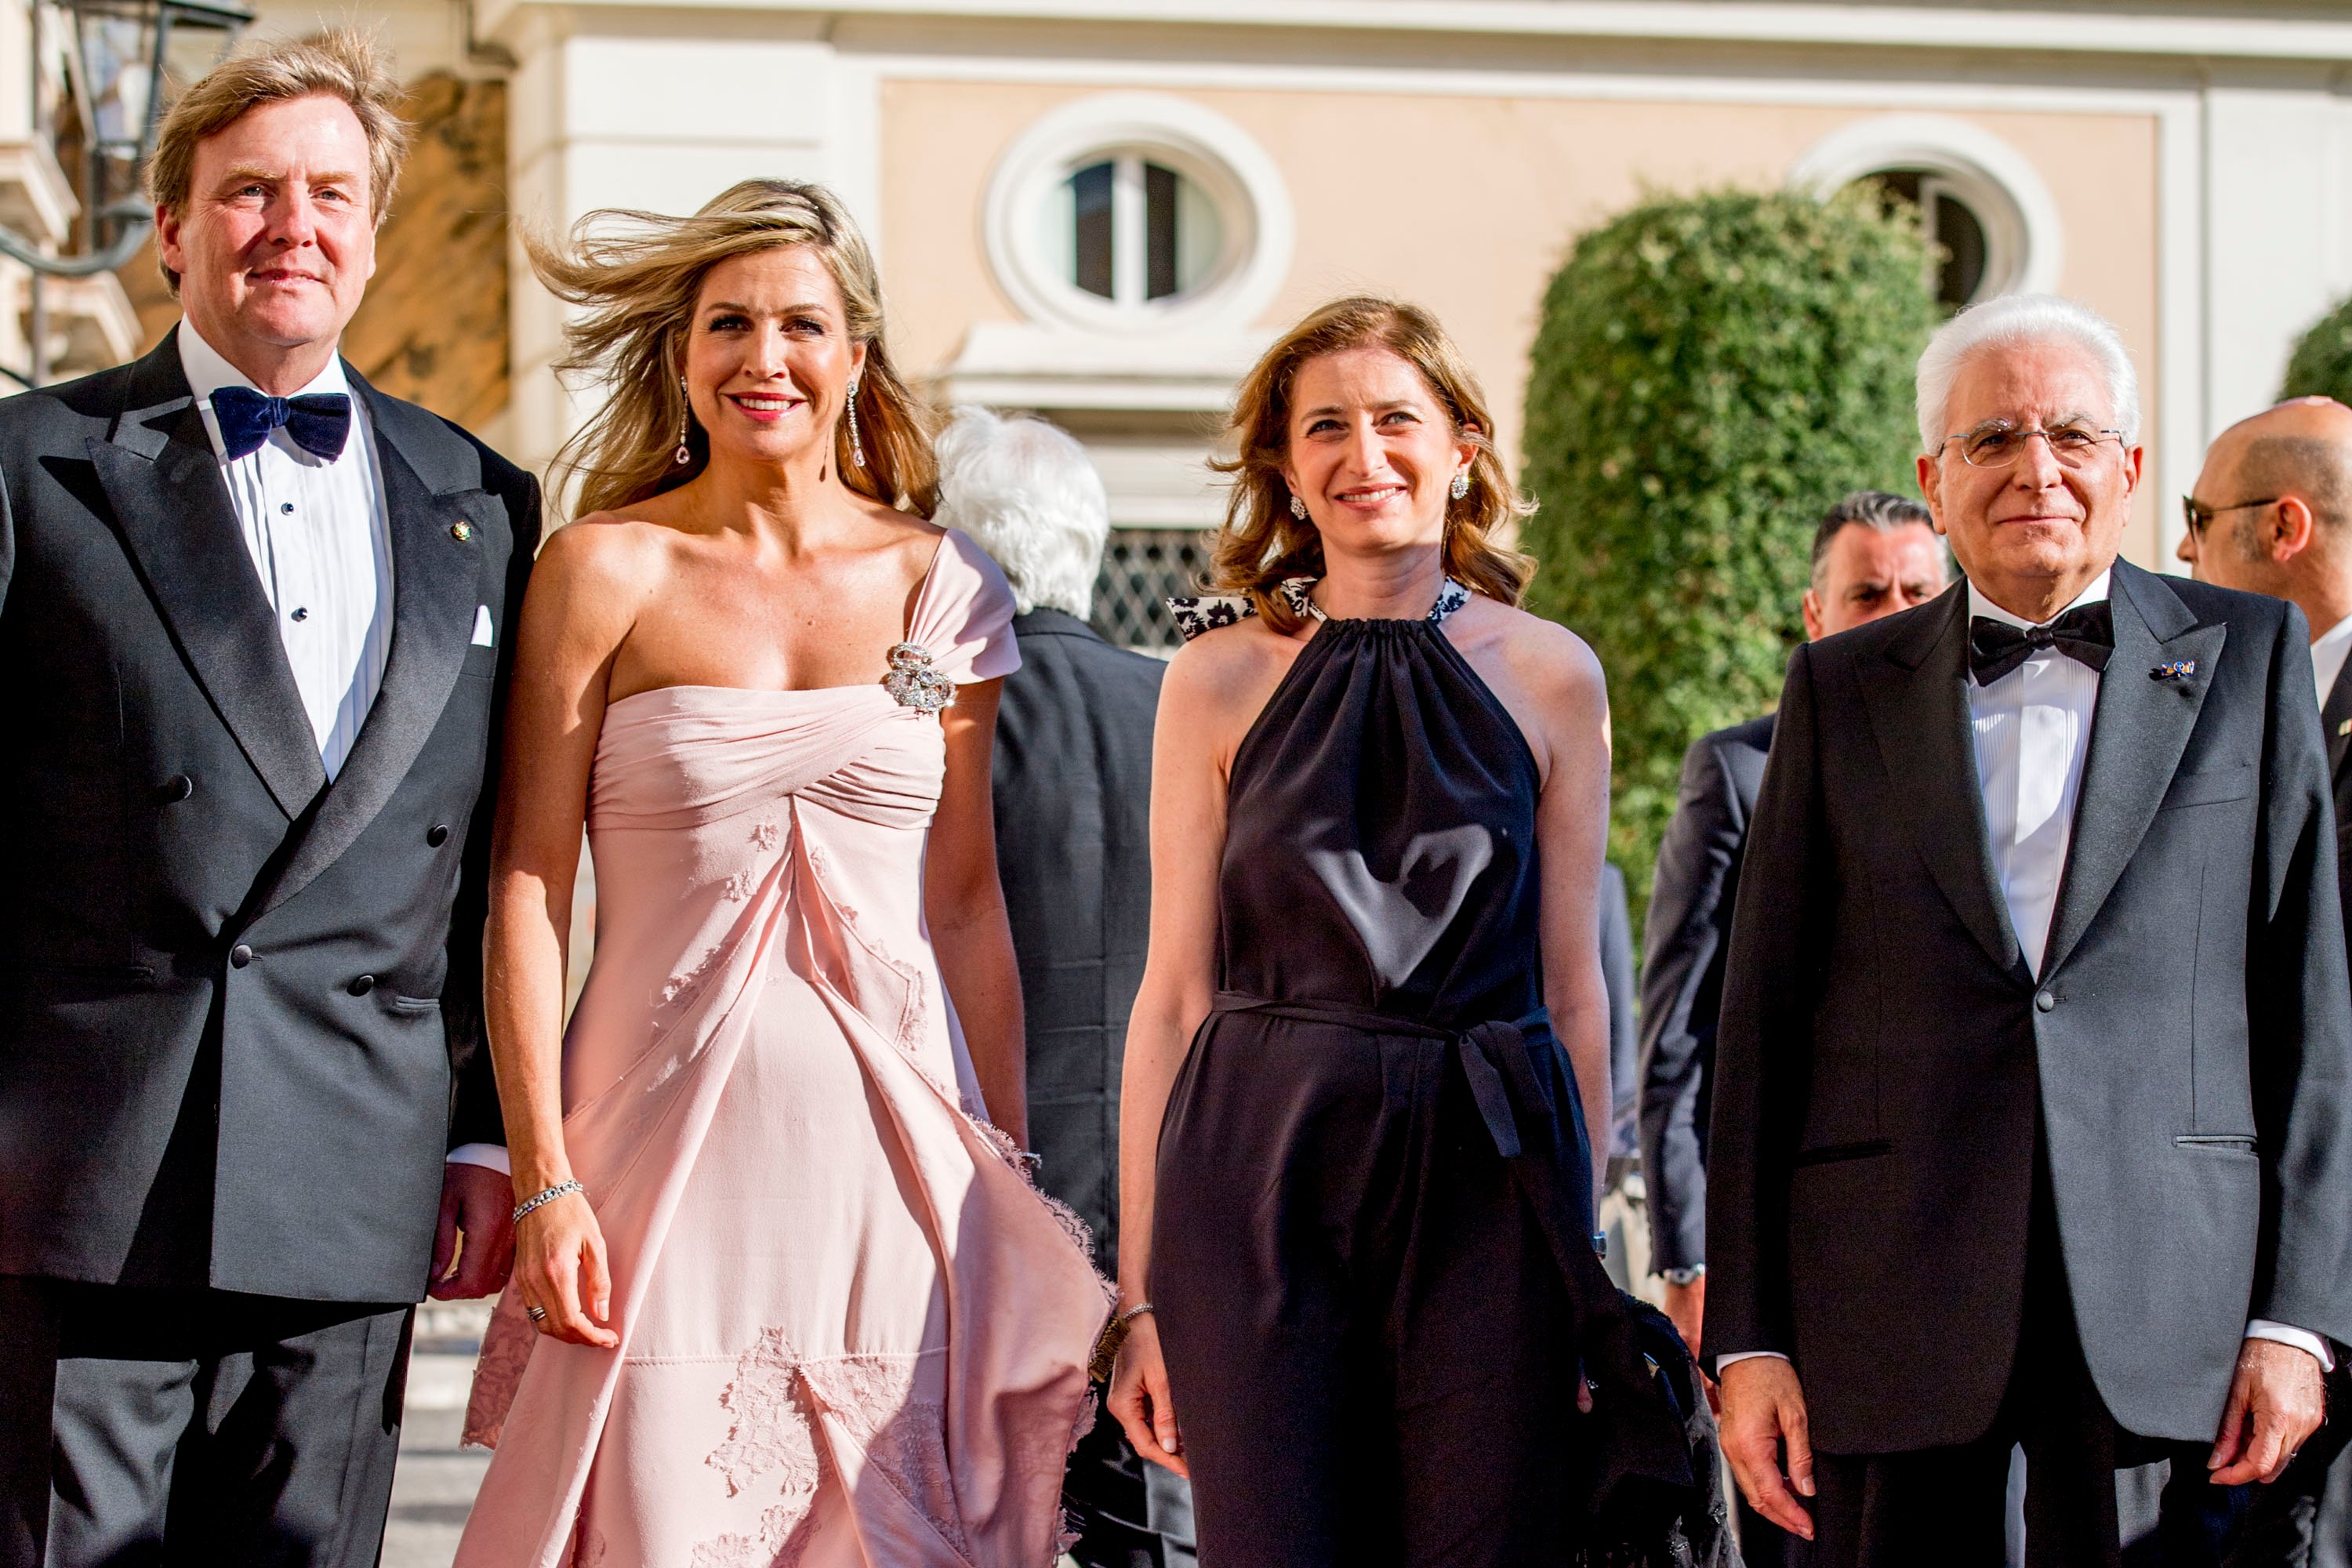 2017-06-21 00:00:00 ROME - Koning Willem-Alexander en koningin Maxima samen met president Sergio Mattarella en zijn vrouw Laura Mattarella tijdens de aankomst bij het Palazzo Colonna. ANP ROBIN UTRECHT **NETHERLANDS ONLY**